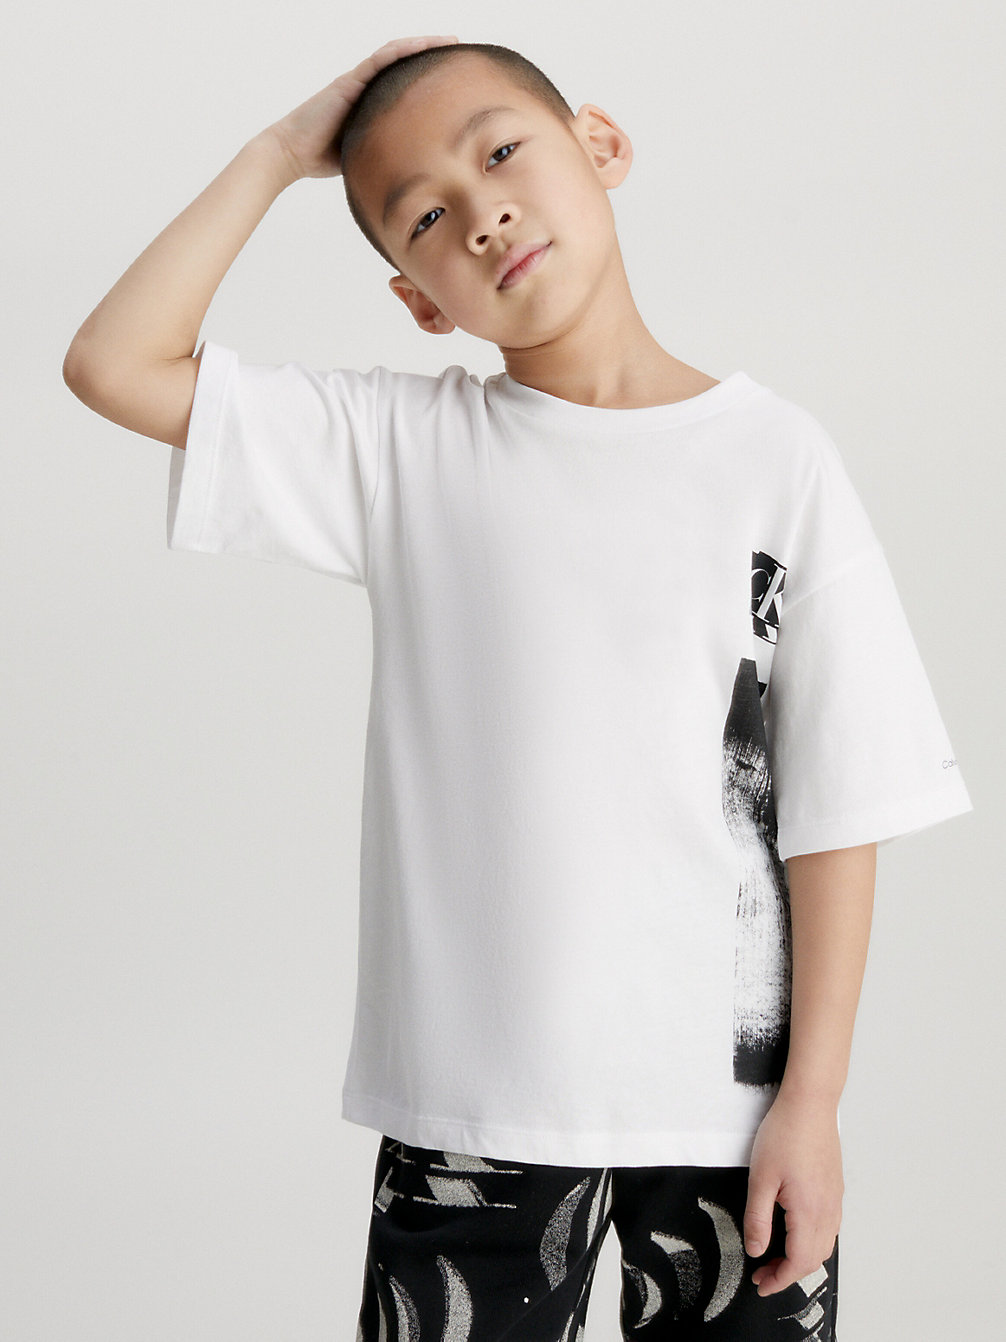 BRIGHT WHITE > Lässiges T-Shirt Mit Grafik In Glitch-Optik > undefined Jungen - Calvin Klein